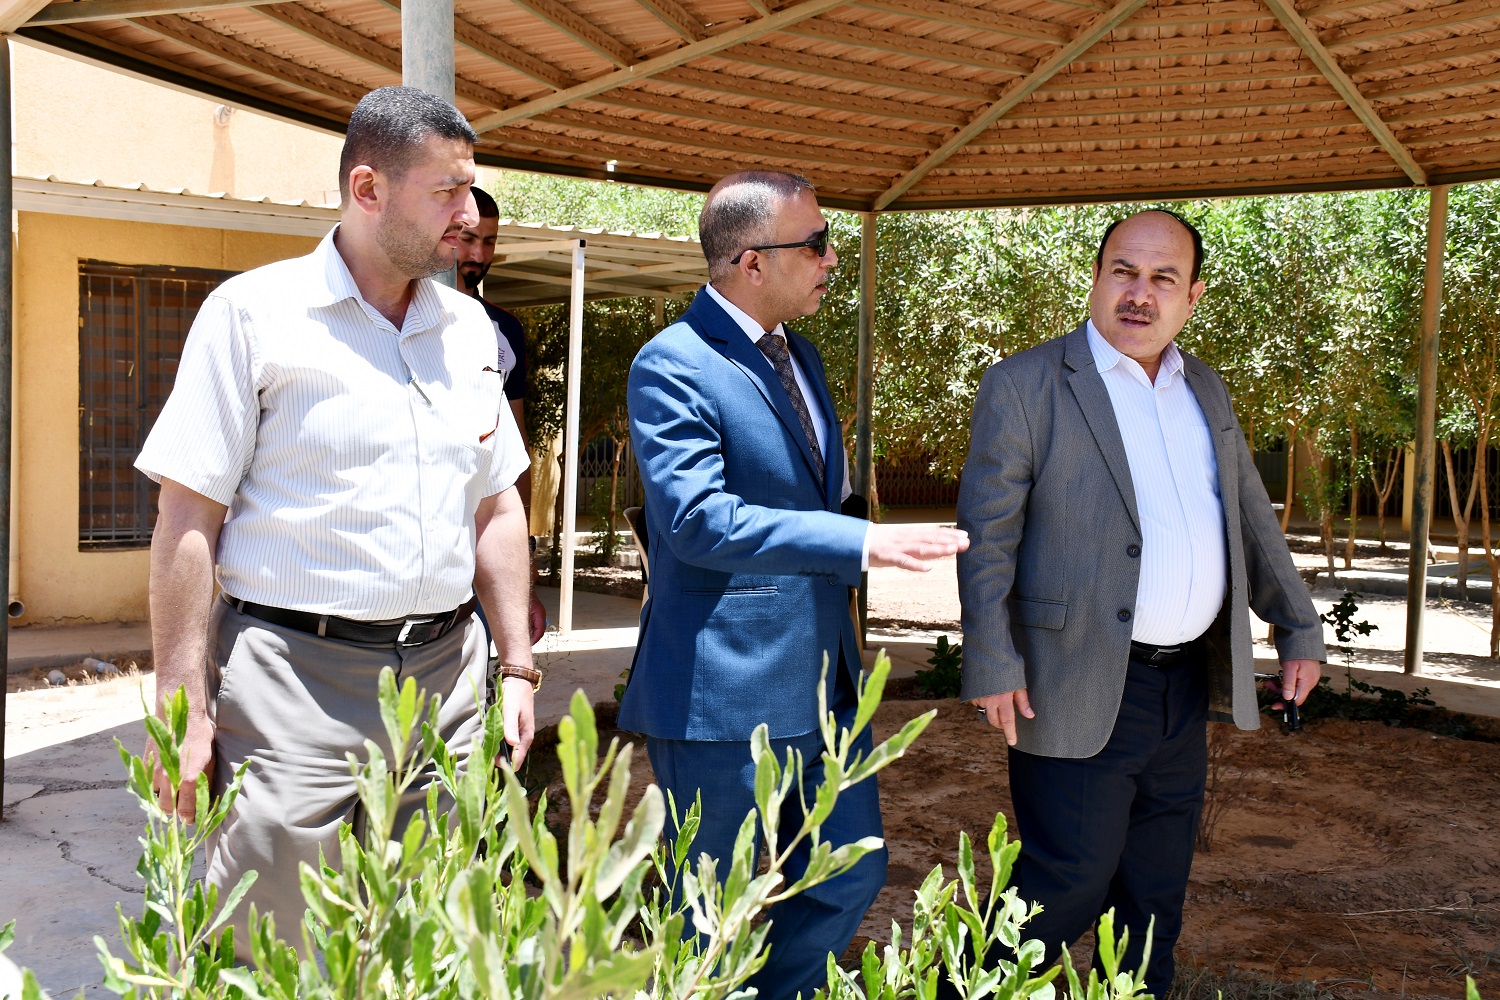 السيد مدير الأقسام الداخلية في جامعة الأنبار يلتقي مدير الأقسام الداخلية في جامعة الكرخ